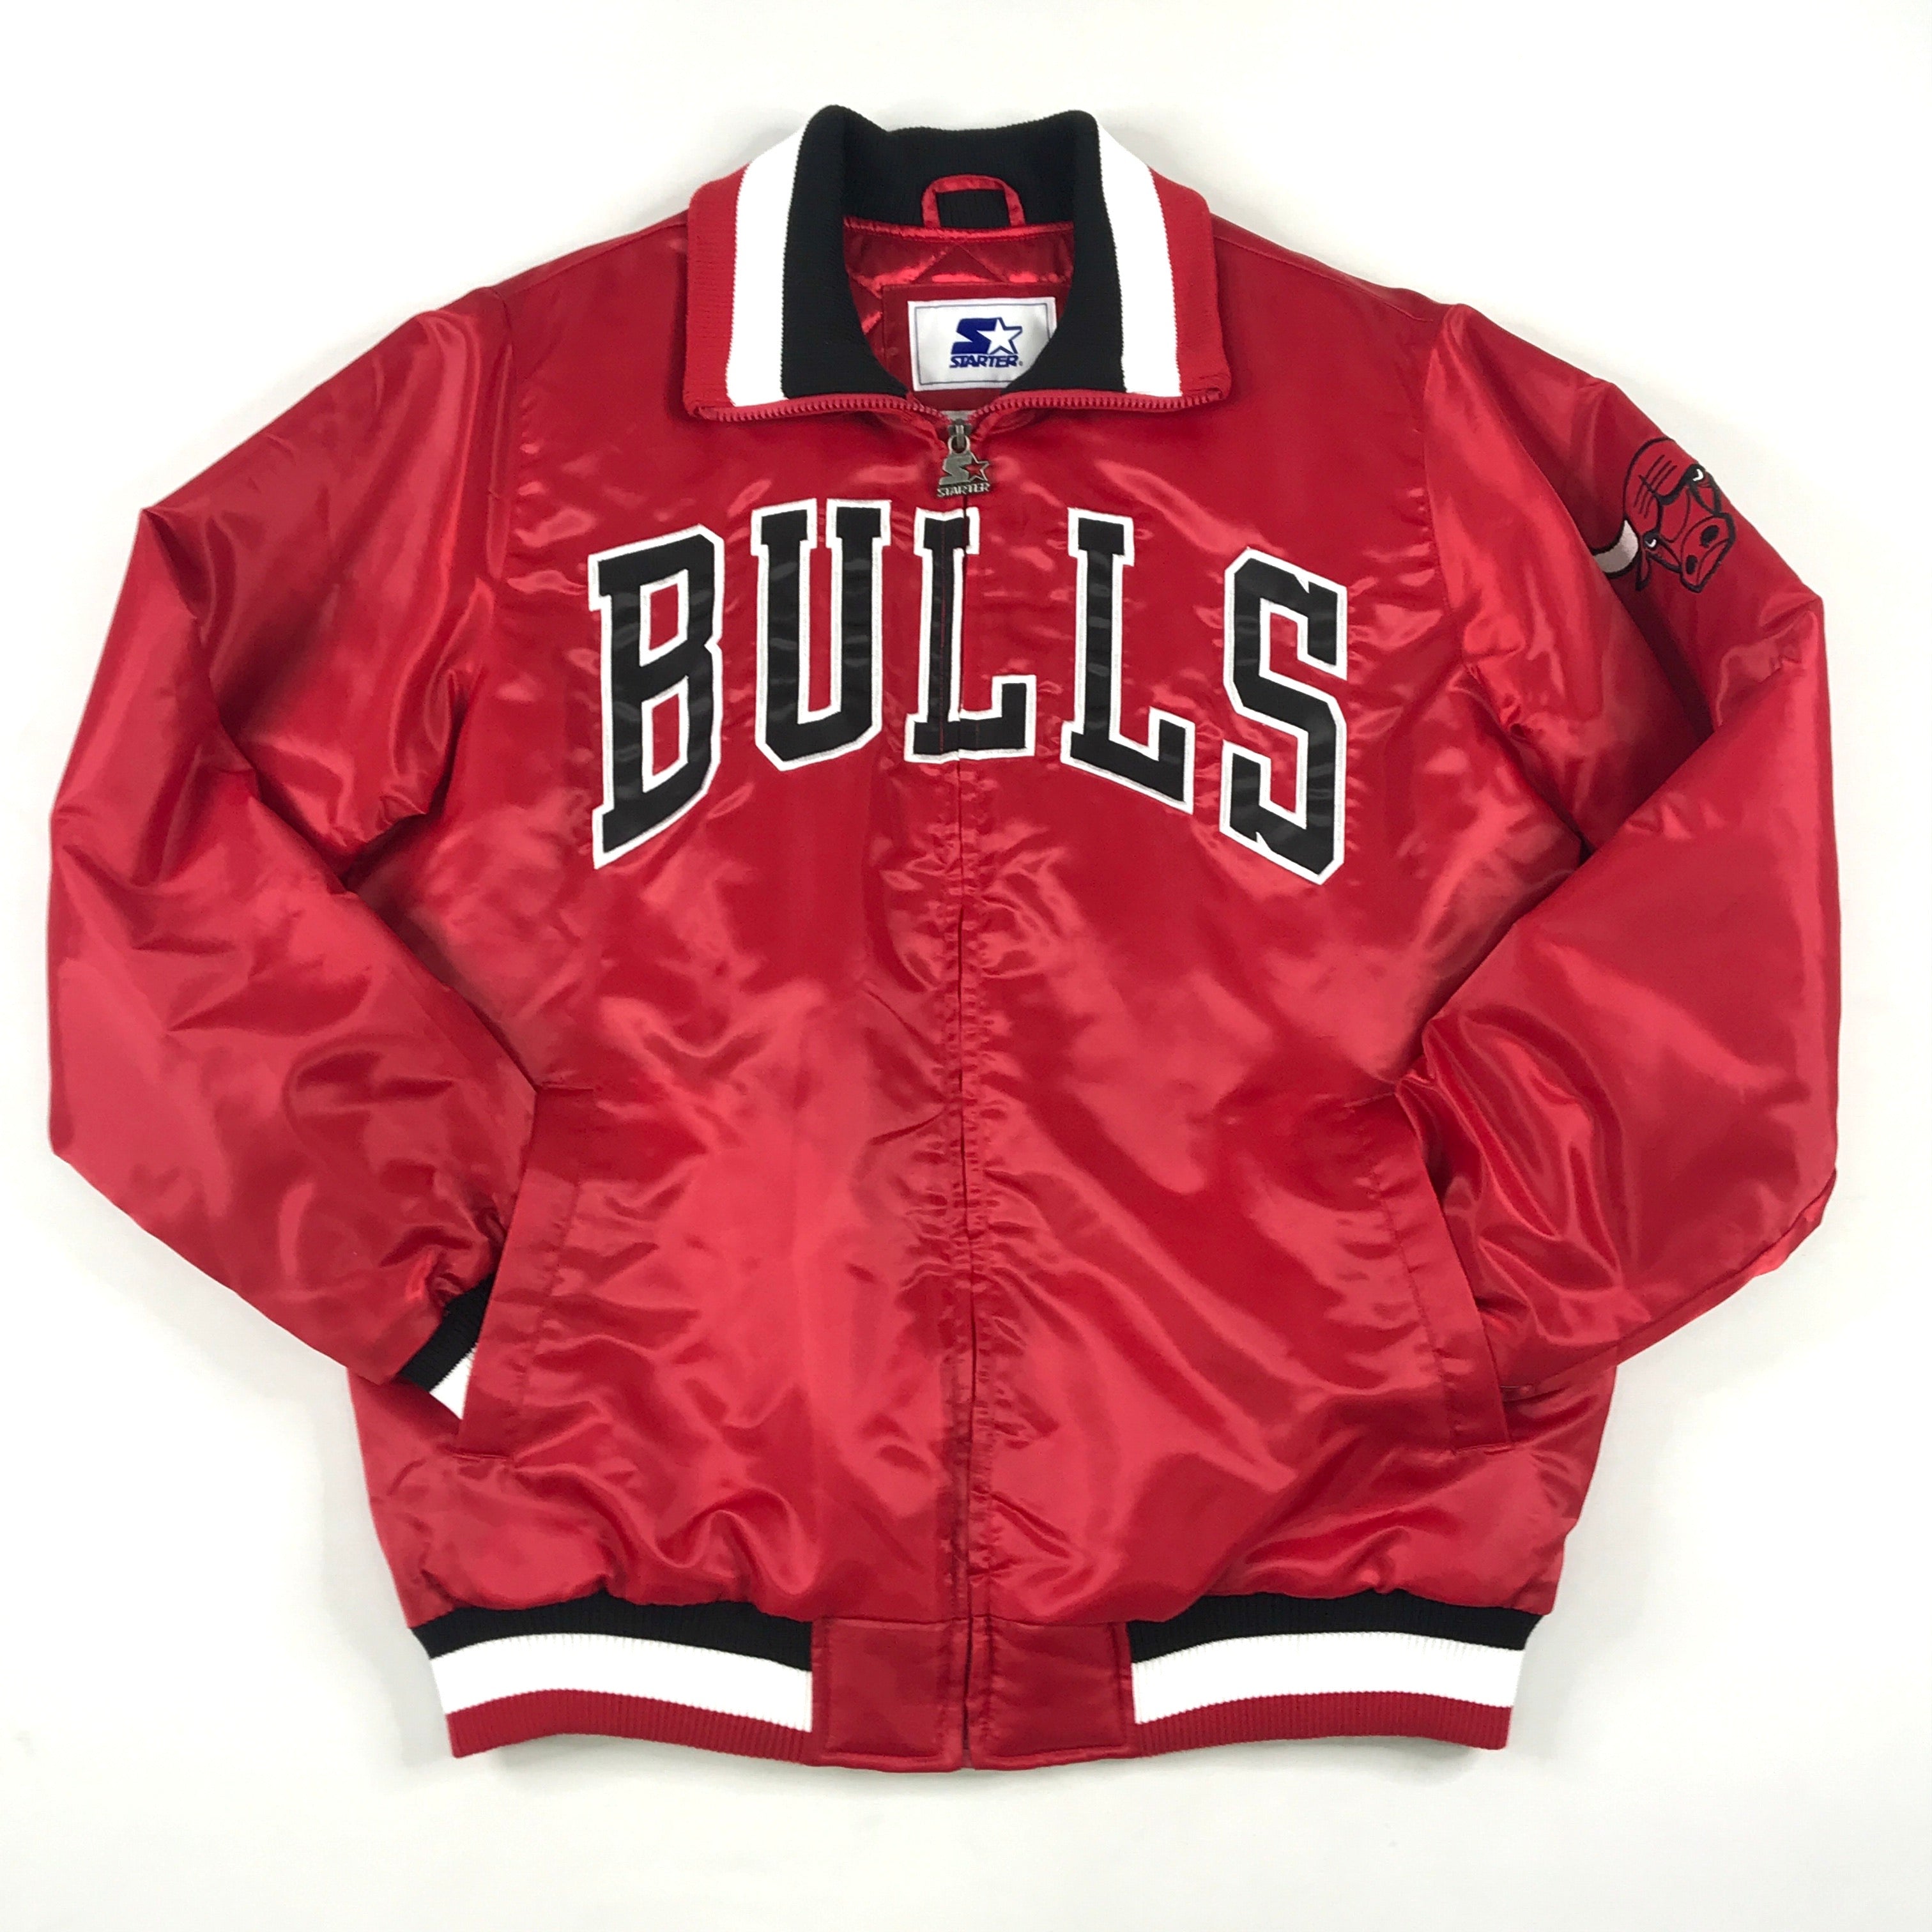 Chicago Bulls Starter Red Jacket